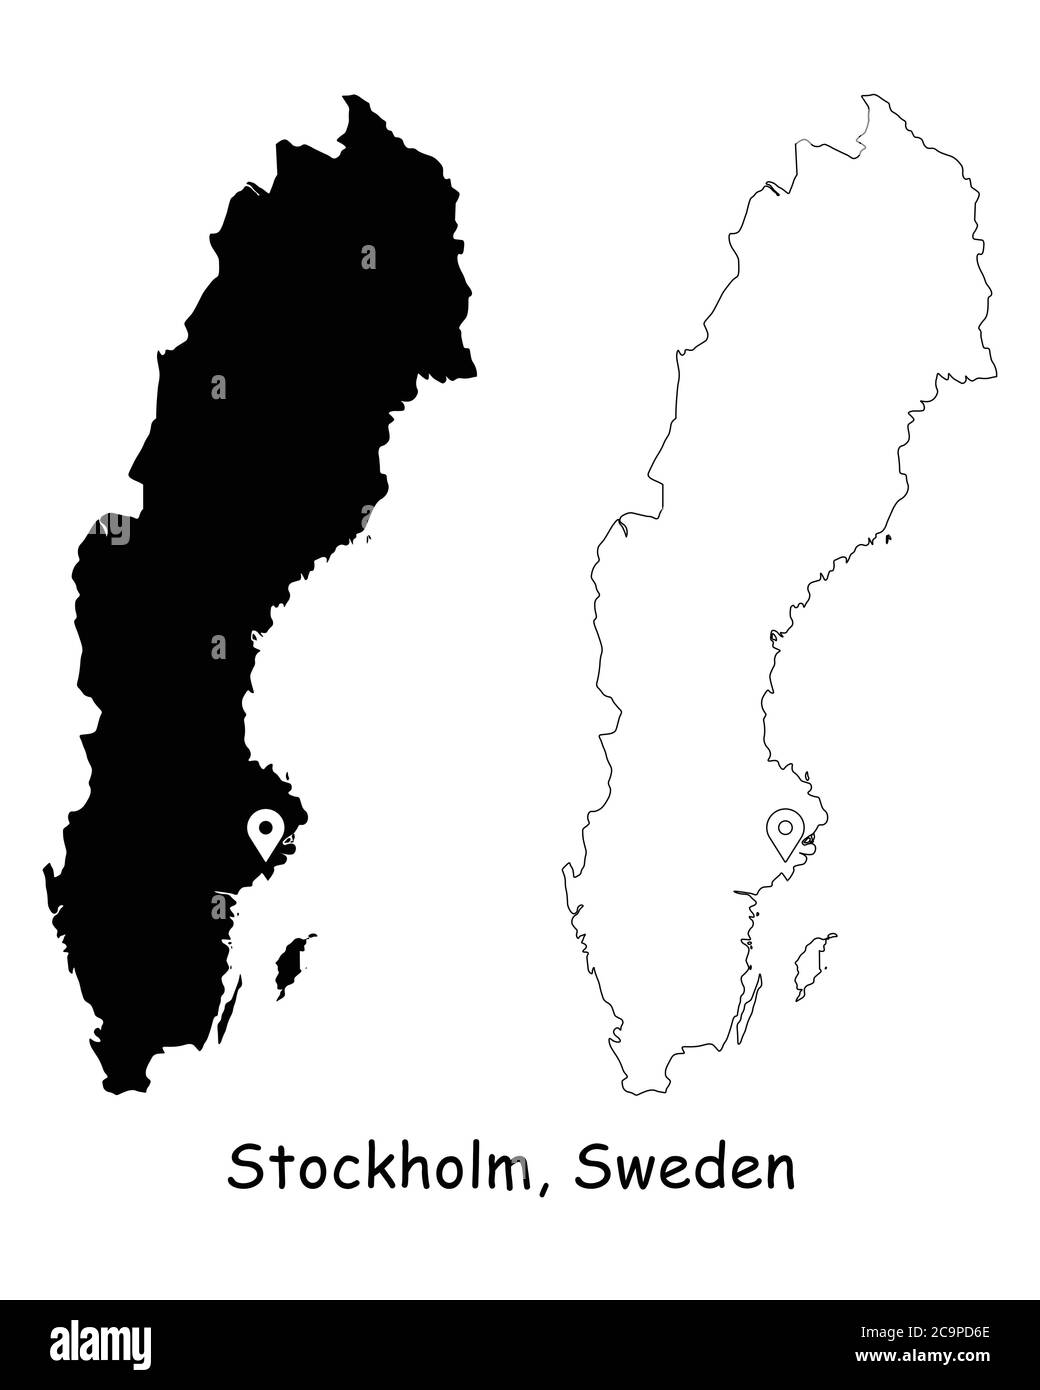 Stoccolma, Svezia. Mappa dettagliata del Paese con il pin della posizione sulla città capitale. Silhouette nera e mappe di contorno isolate su sfondo bianco. Vettore EPS Illustrazione Vettoriale